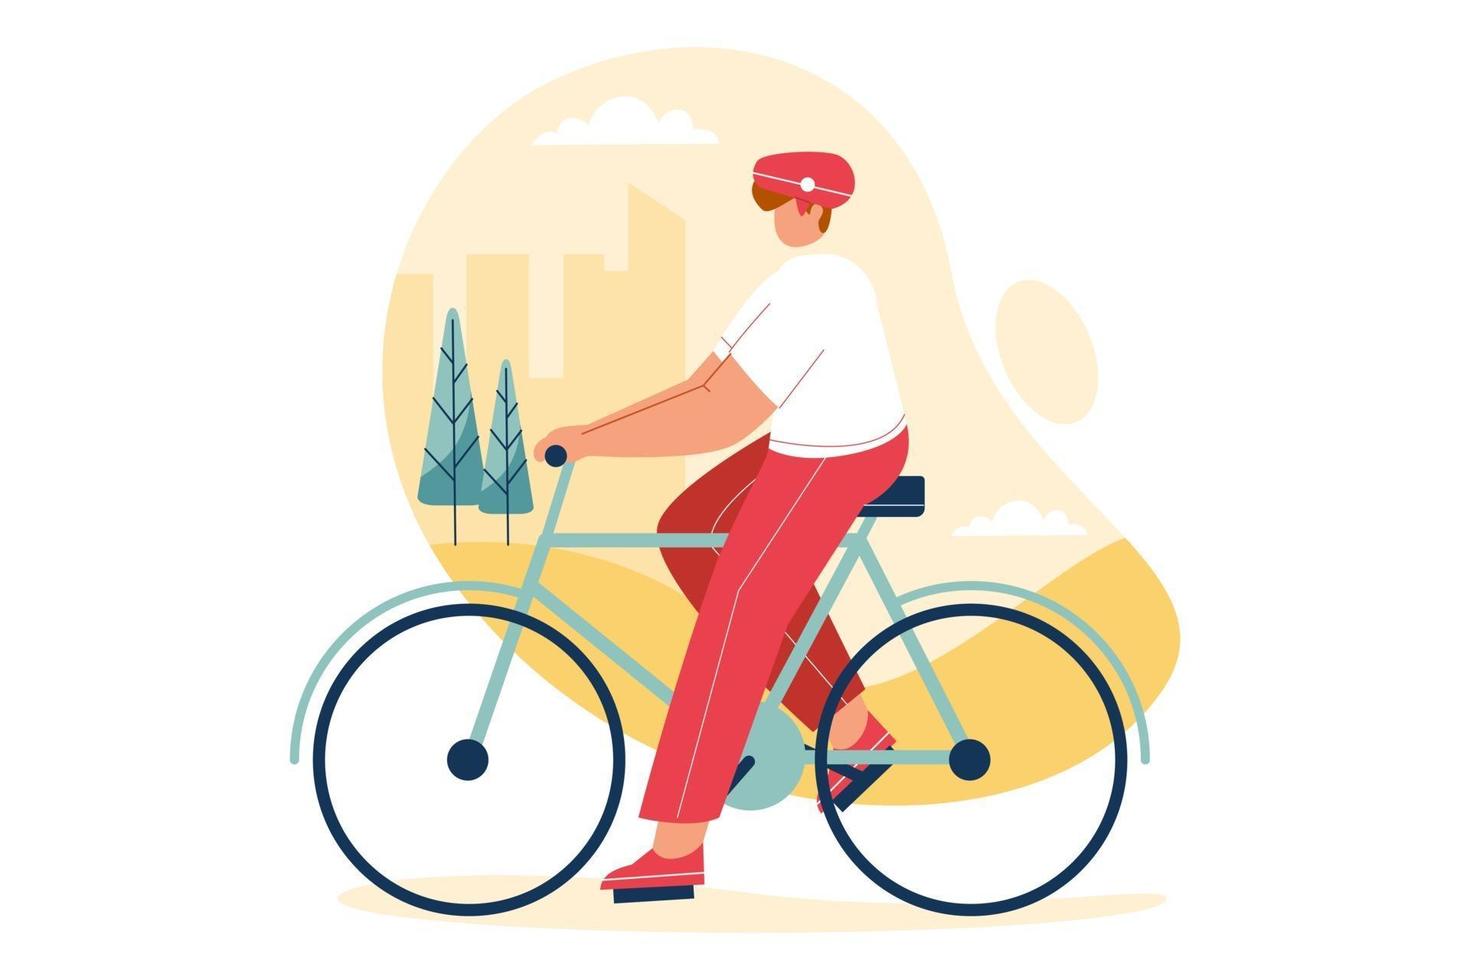 persoon oefeningen op de fiets bij stadspark. gezonde levensstijl vector illustratie concept.